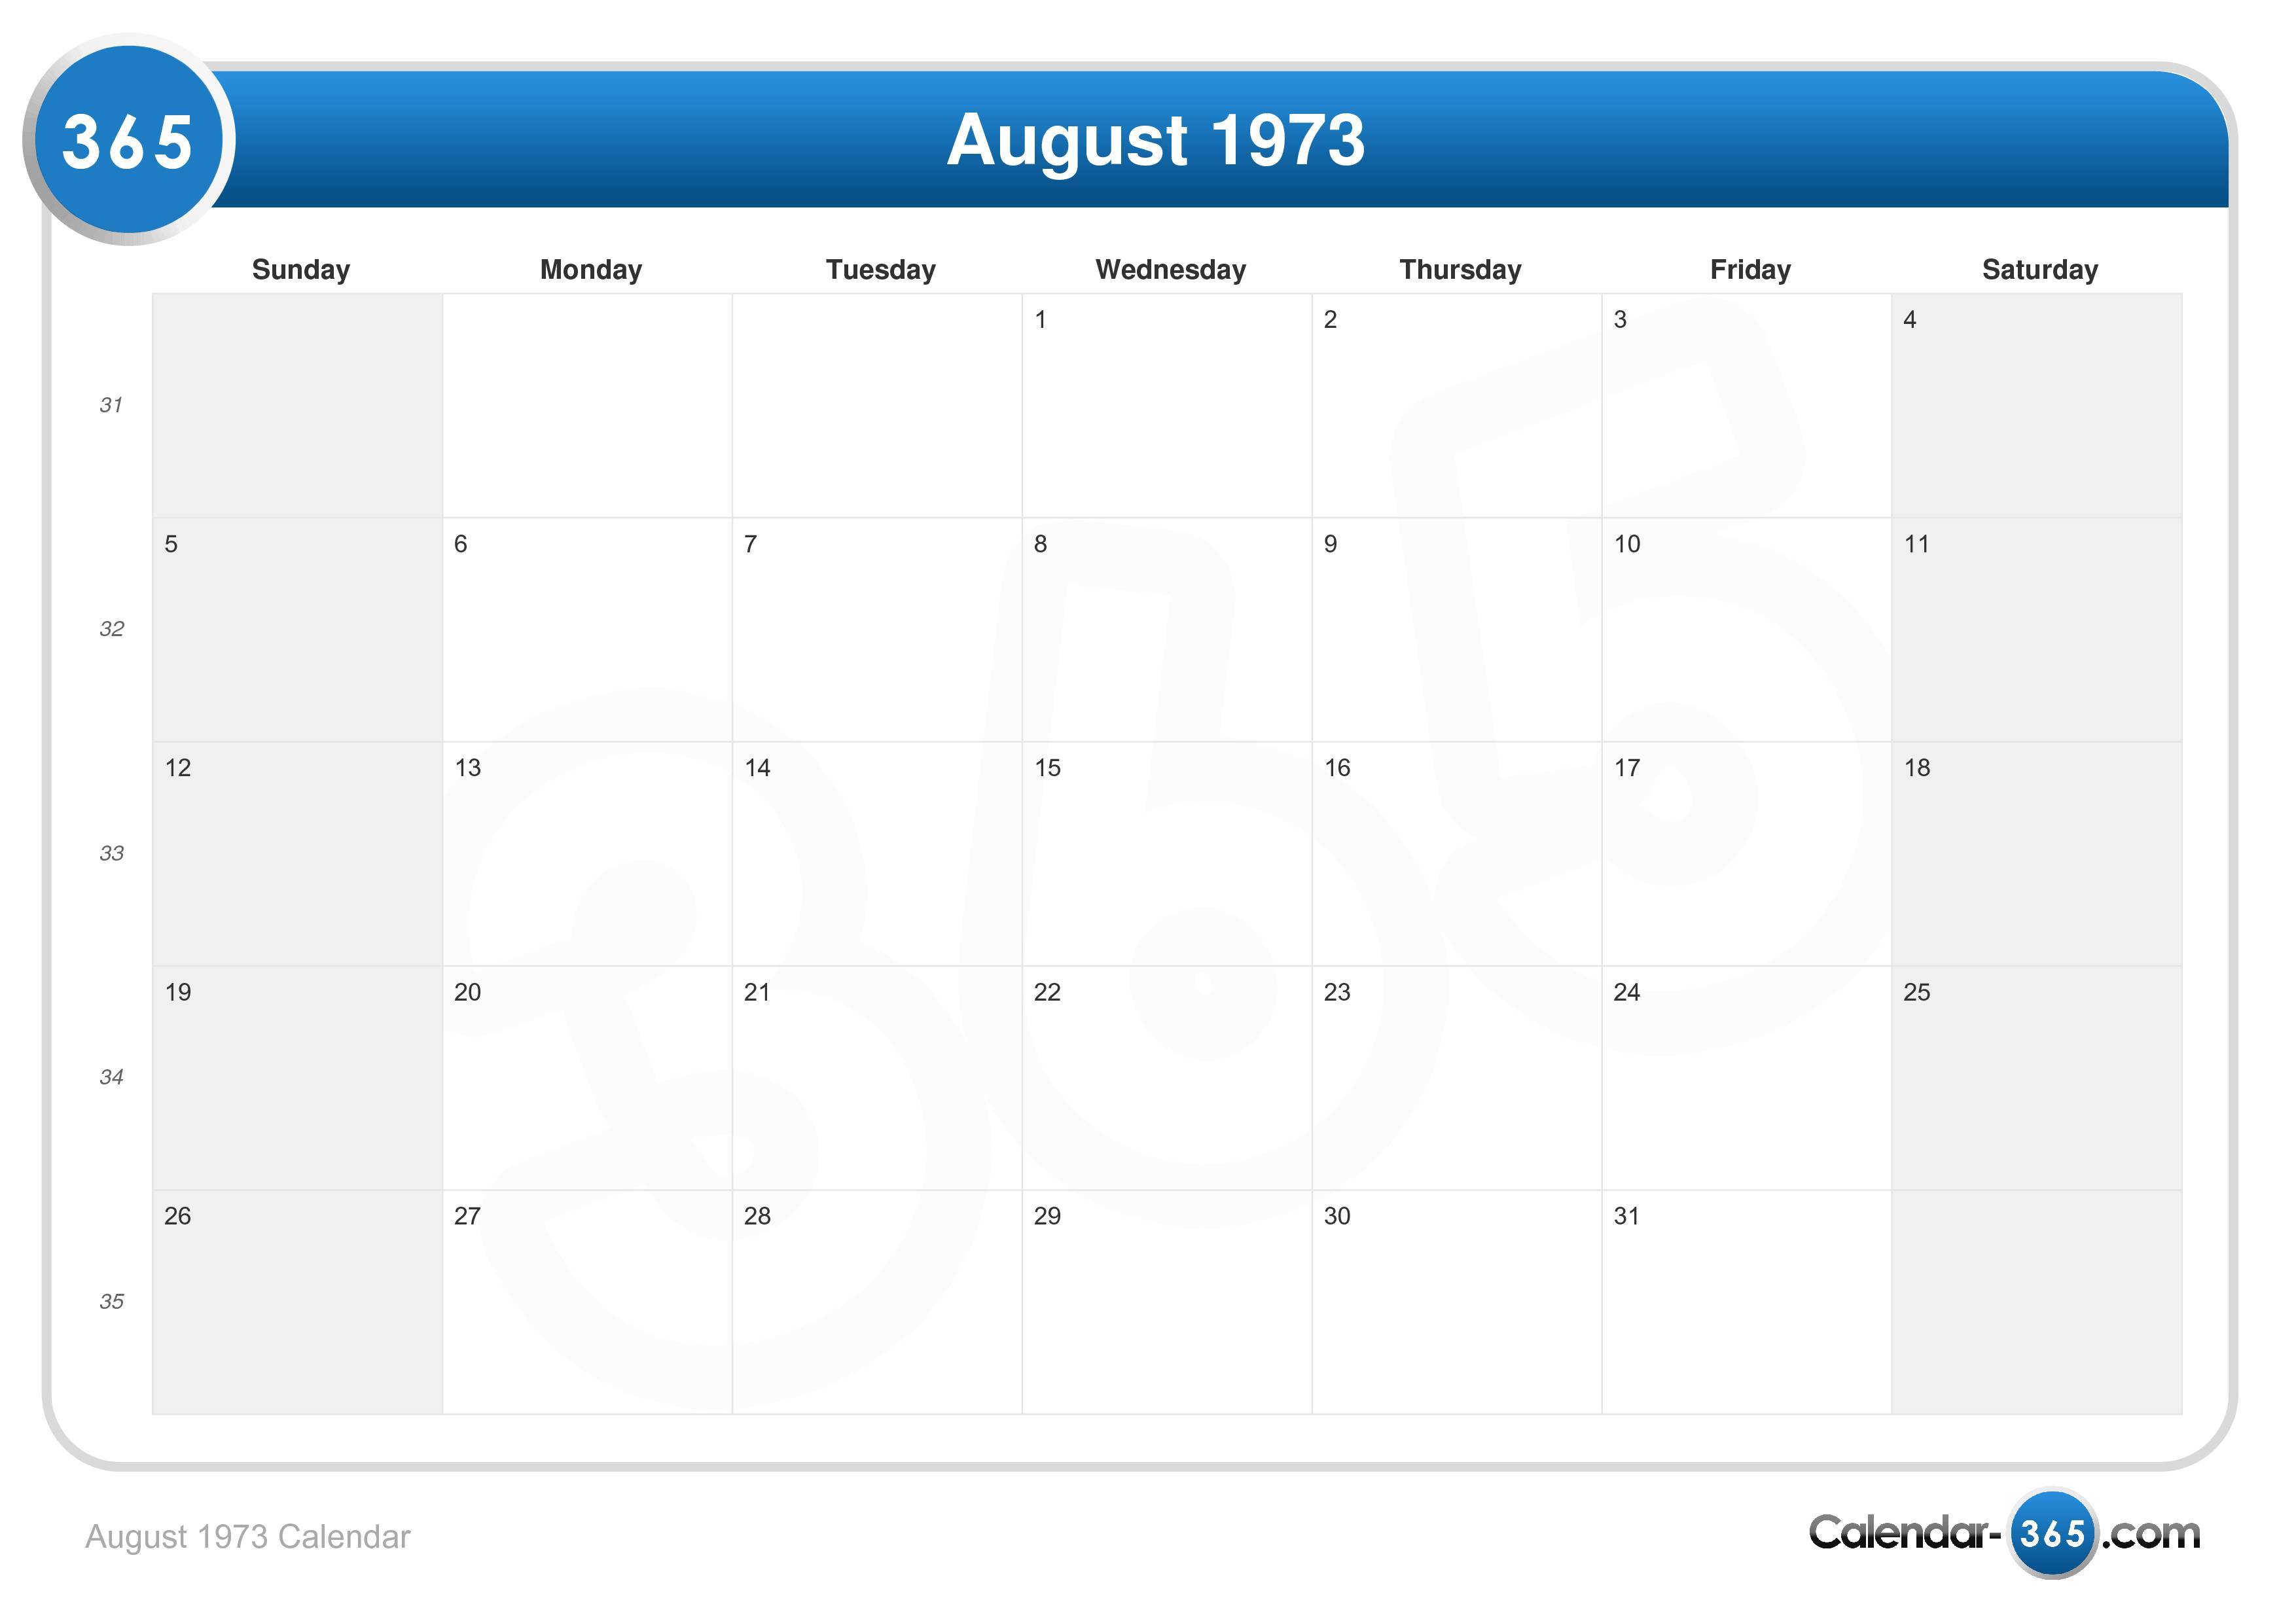 August 1973 Calendar